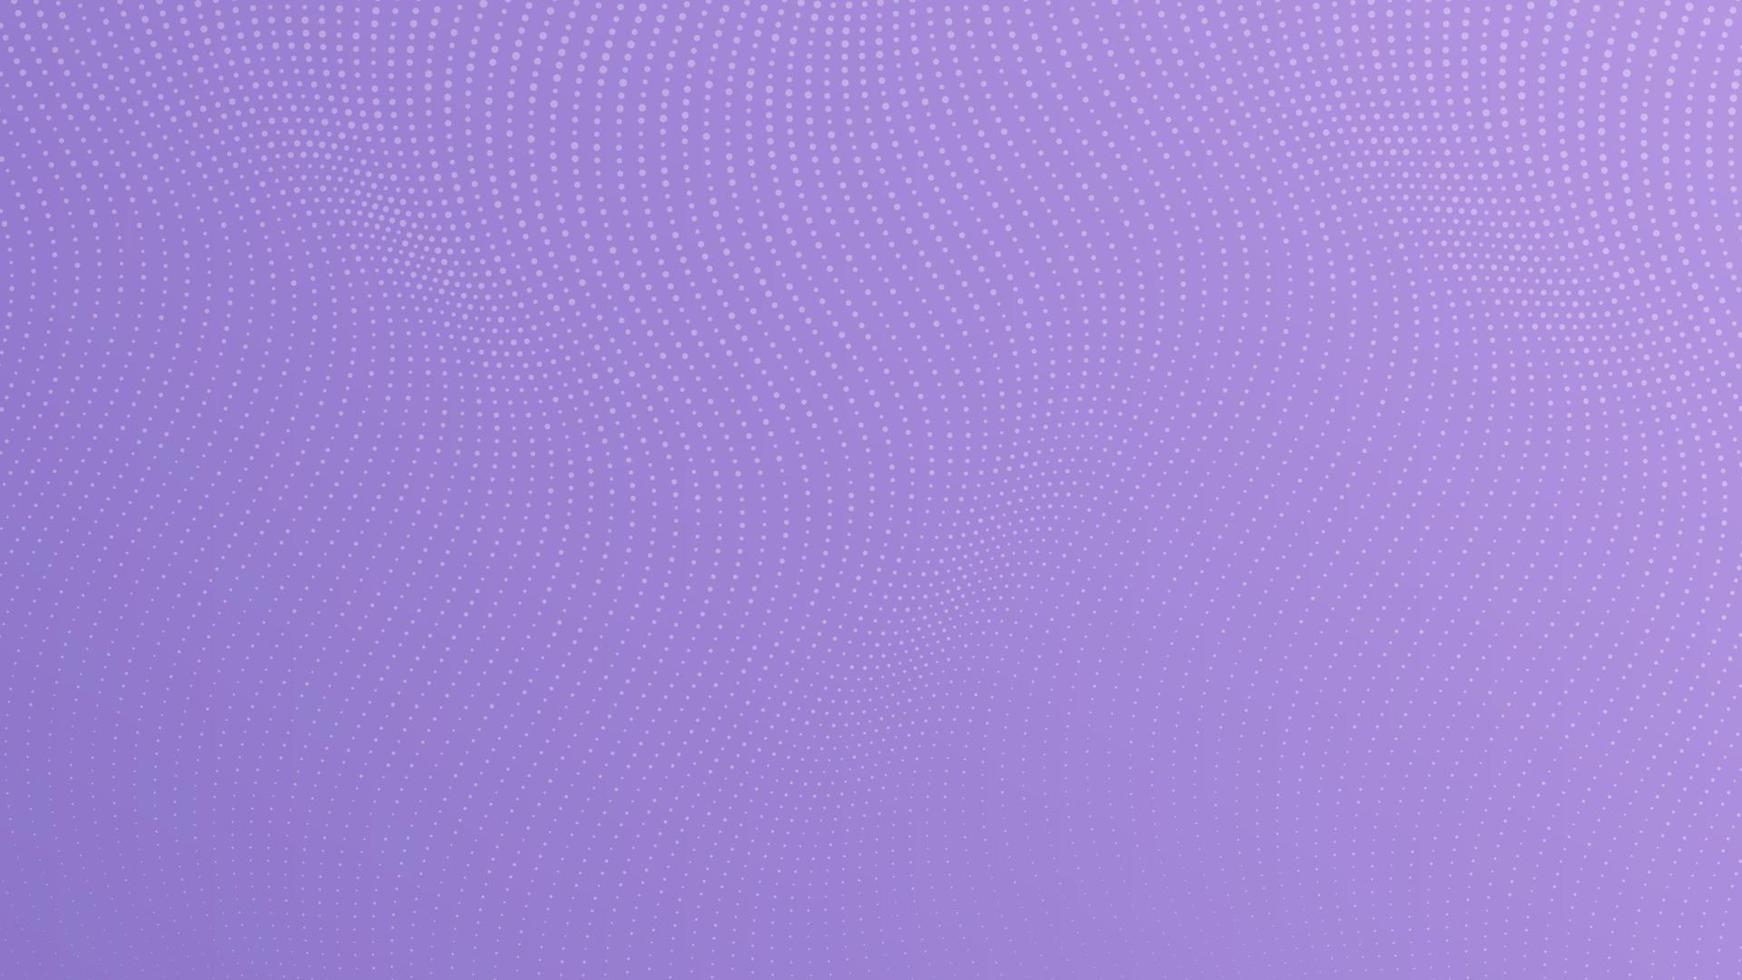 Halbton Gradient Hintergrund mit Punkte. abstrakt lila gepunktet Pop Kunst Muster im Comic Stil. Vektor Illustration